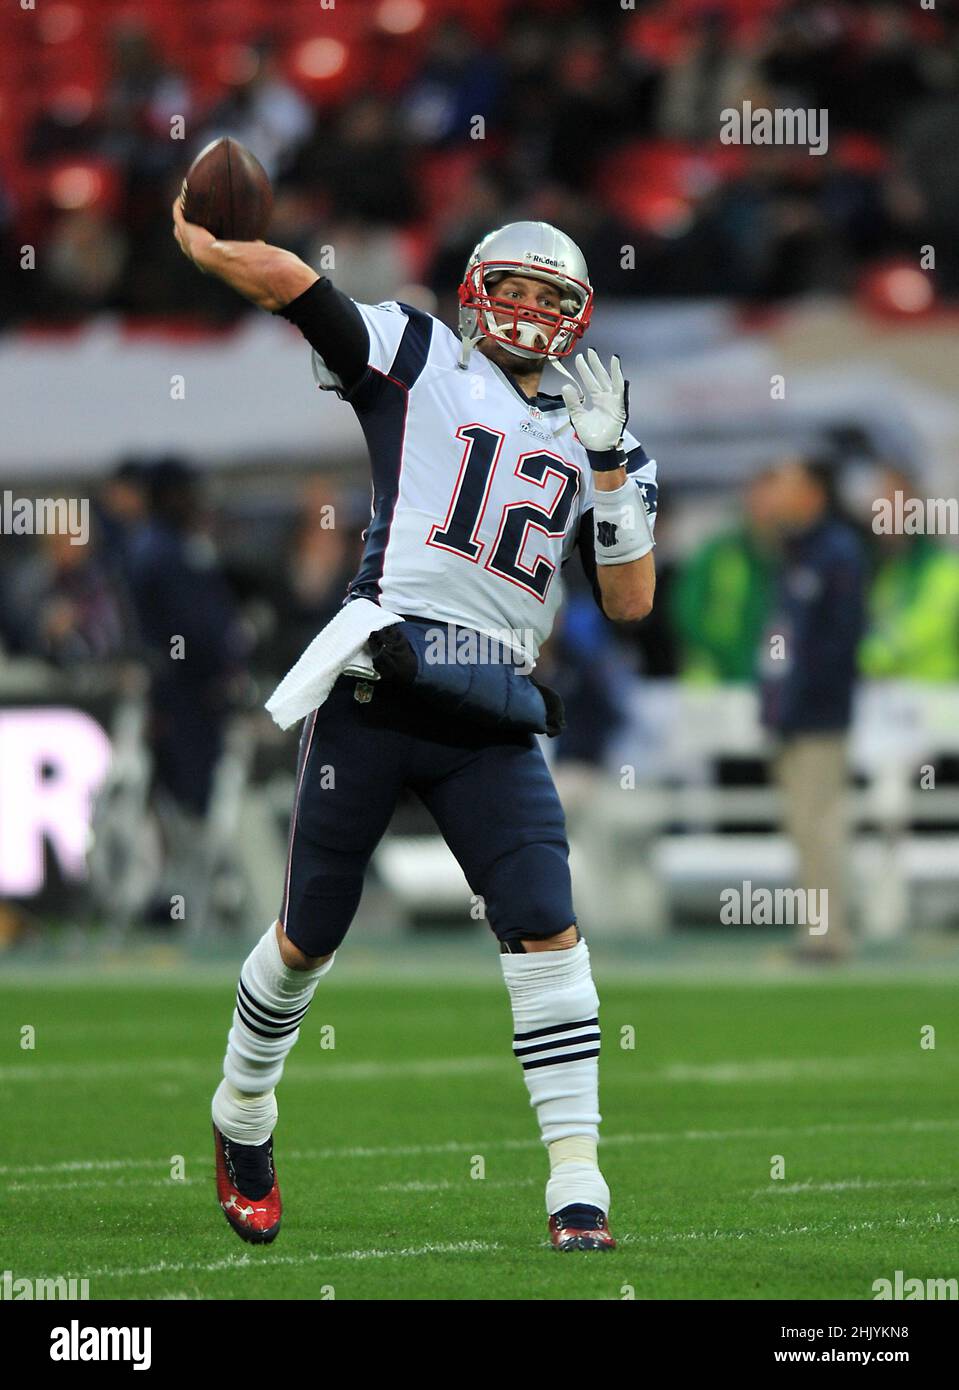 Foto di archivio datata 28-10-2012 del sette-tempo vincitore del Super Bowl Tom Brady, che si è ritirato da NFL di 44 anni, ha annunciato su Instagram. Data di emissione: Martedì 1 febbraio 2022. Foto Stock